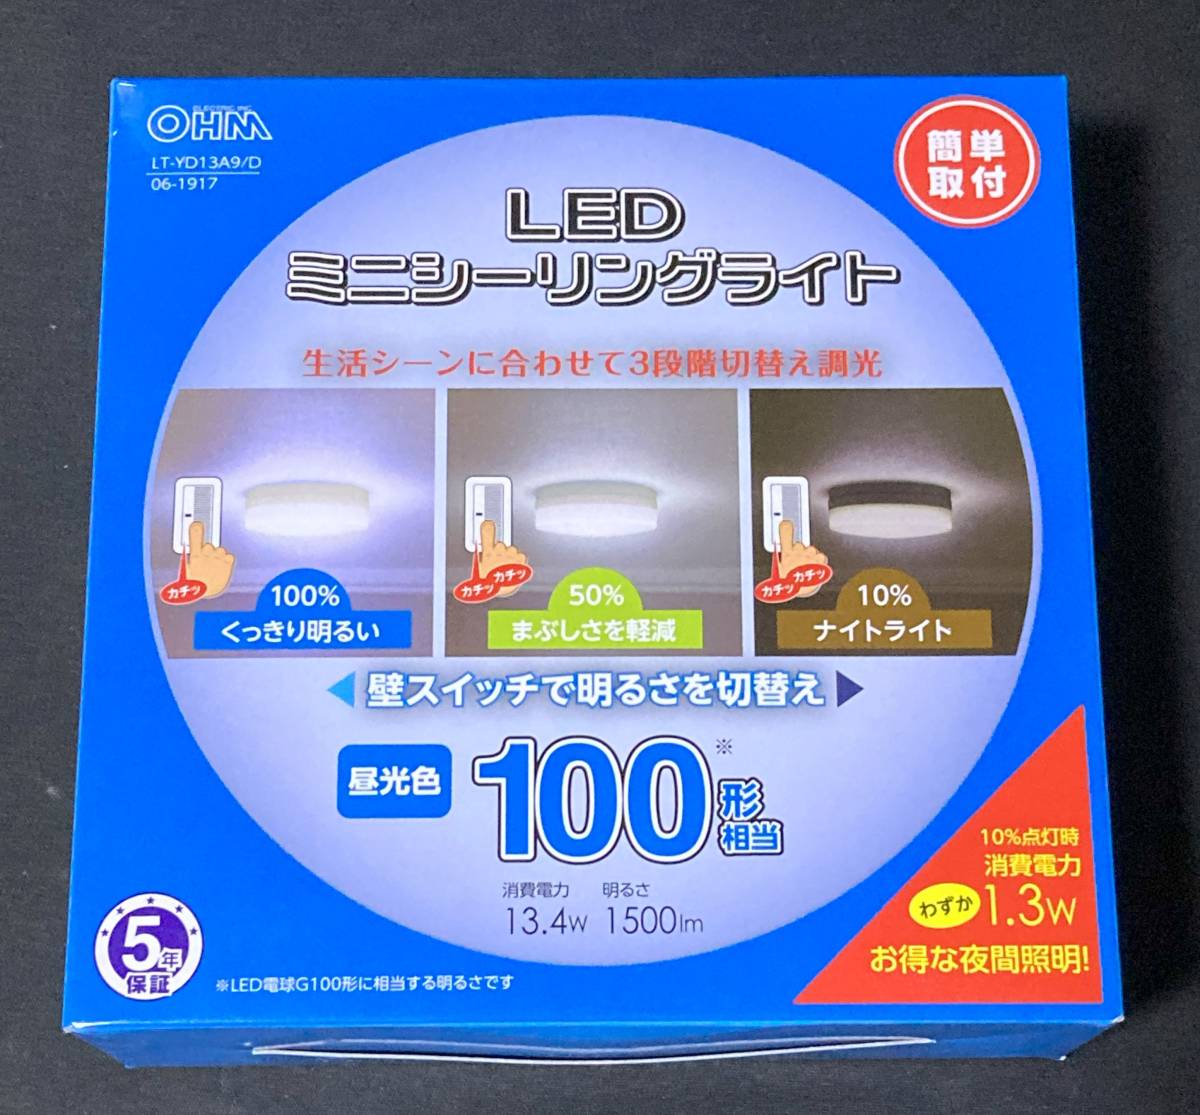 OHM オーム電機 LEDミニシーリングライト 100形相当 3段調光 LT-YD13A9/D_画像1